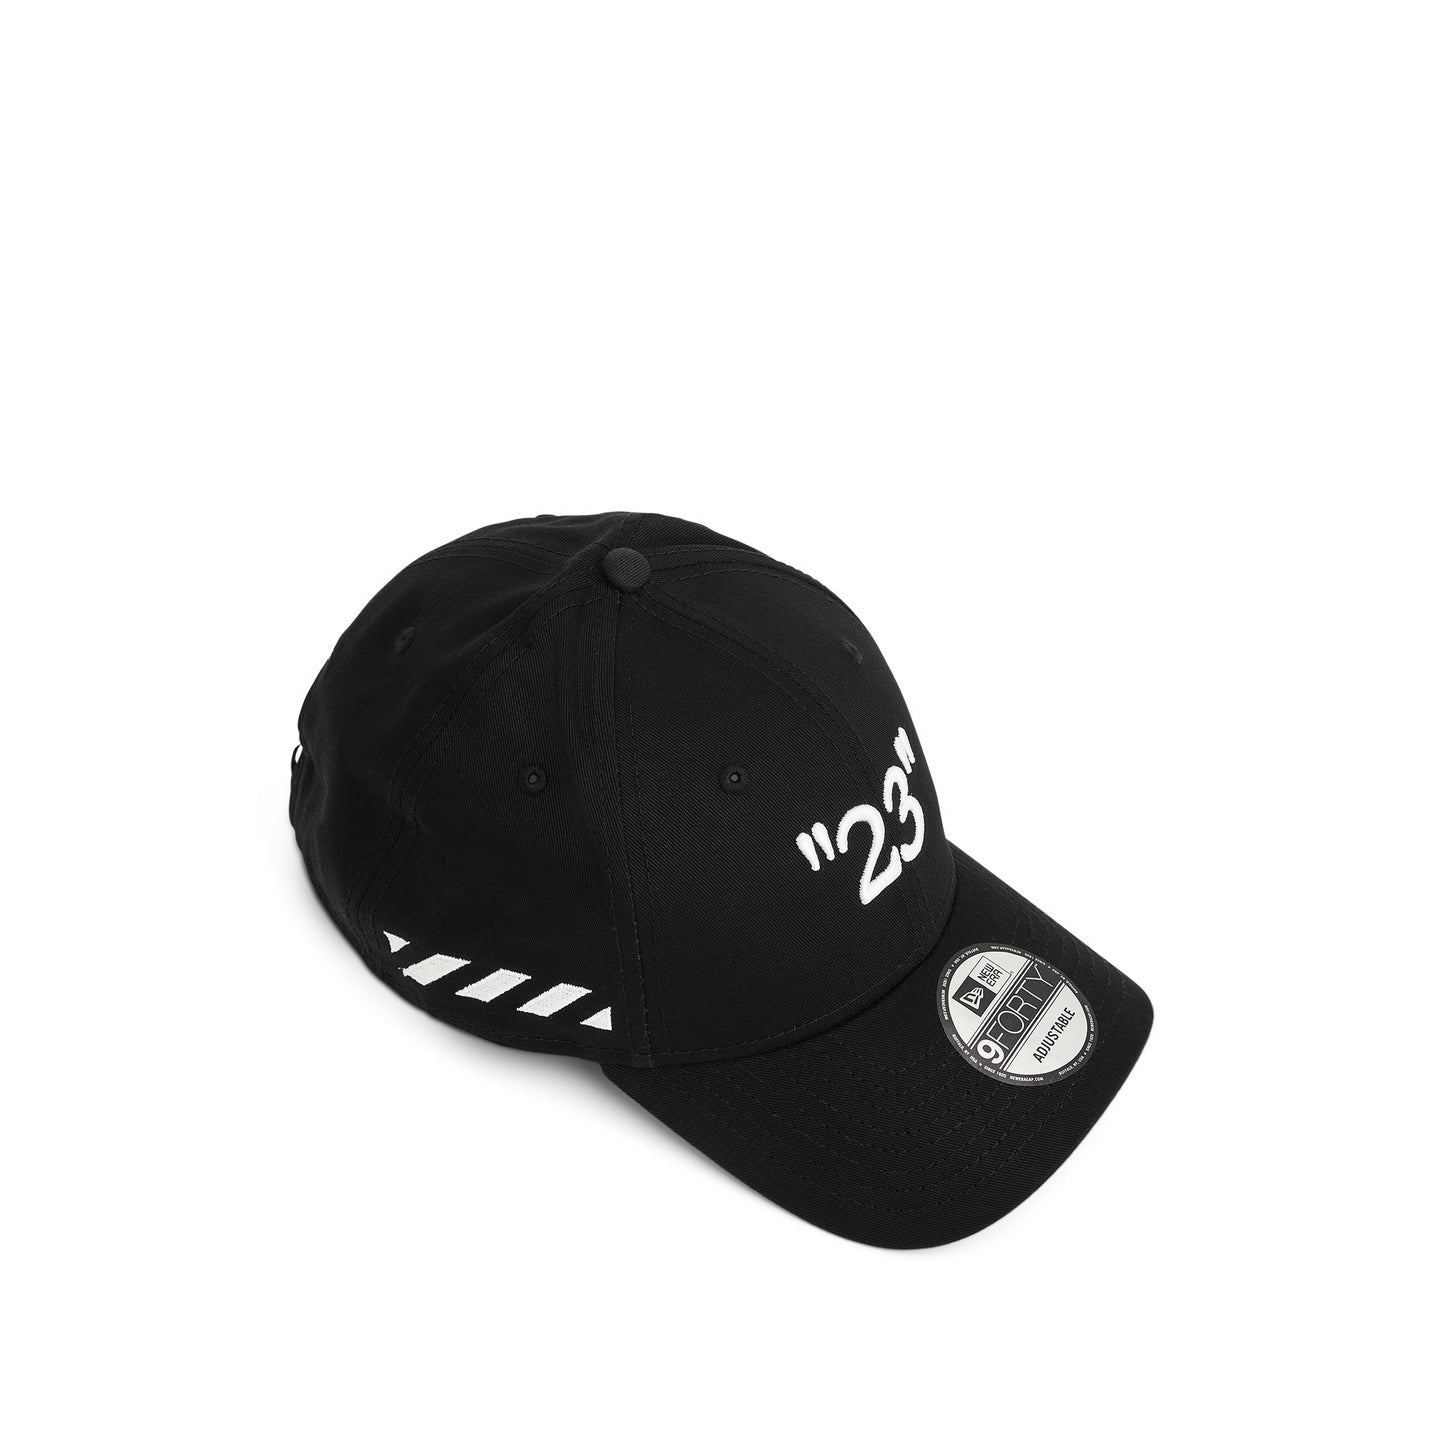 Kit Capsule Cap in Black White